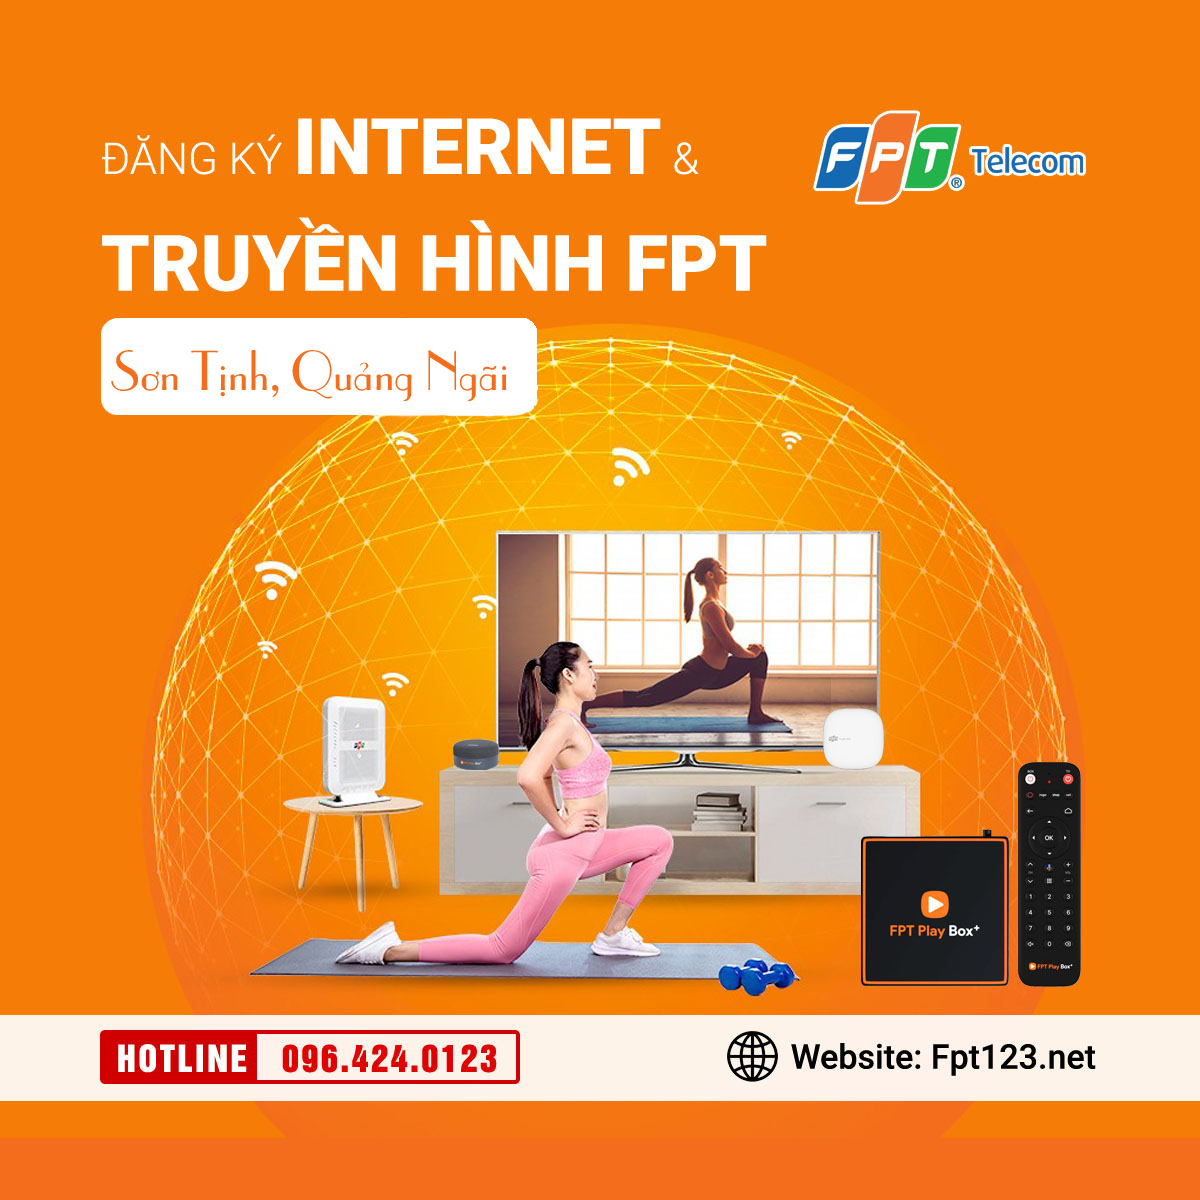 Đăng ký internet và truyền hình FPT Sơn Tịnh, Quảng Ngãi